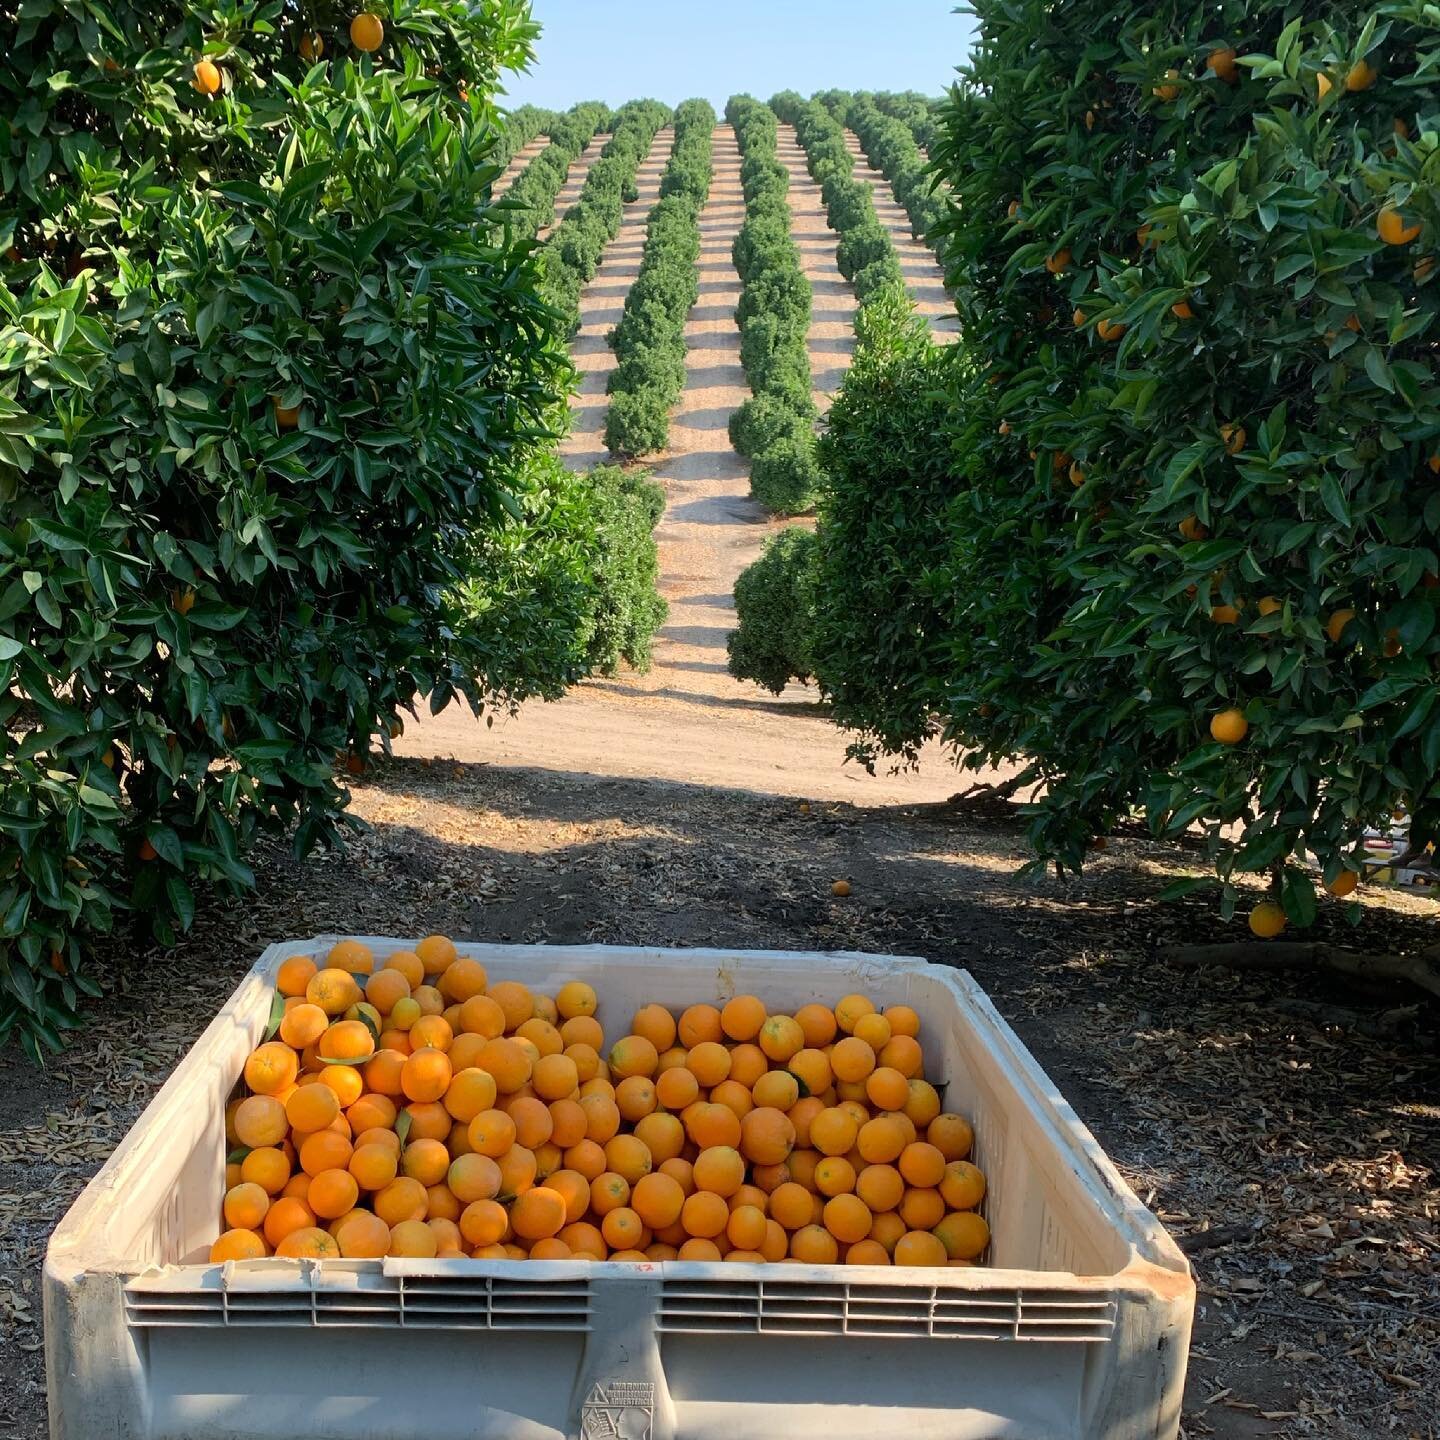 Sweet &amp; tangy Valencia Oranges 

#California #valenciaorange #citrus #citrusseason #orangejuice